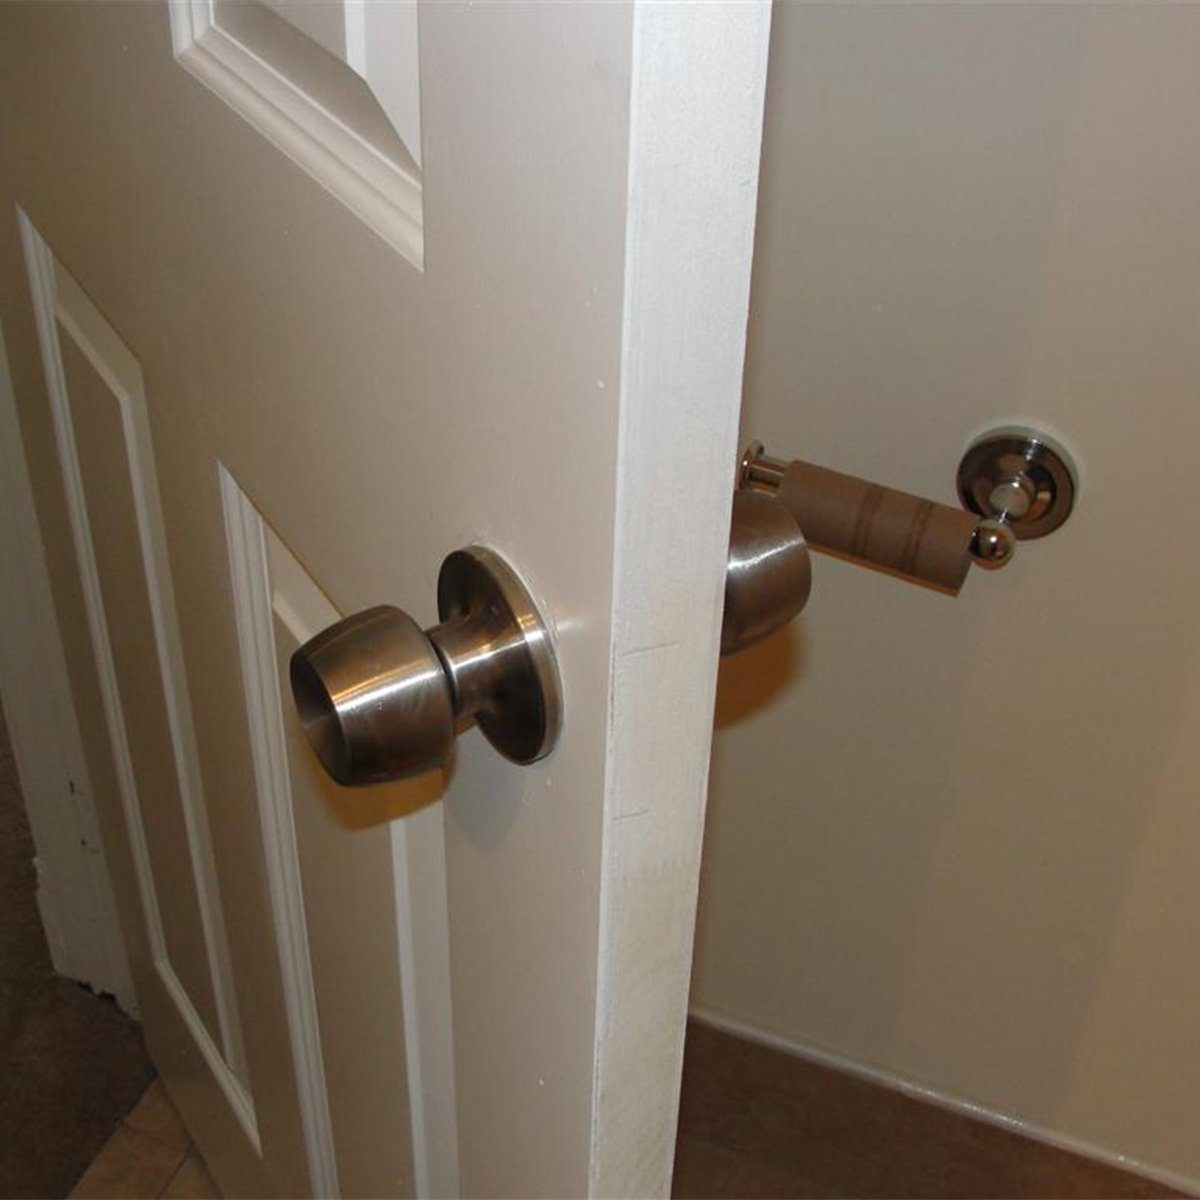 toilet paper holder behind door